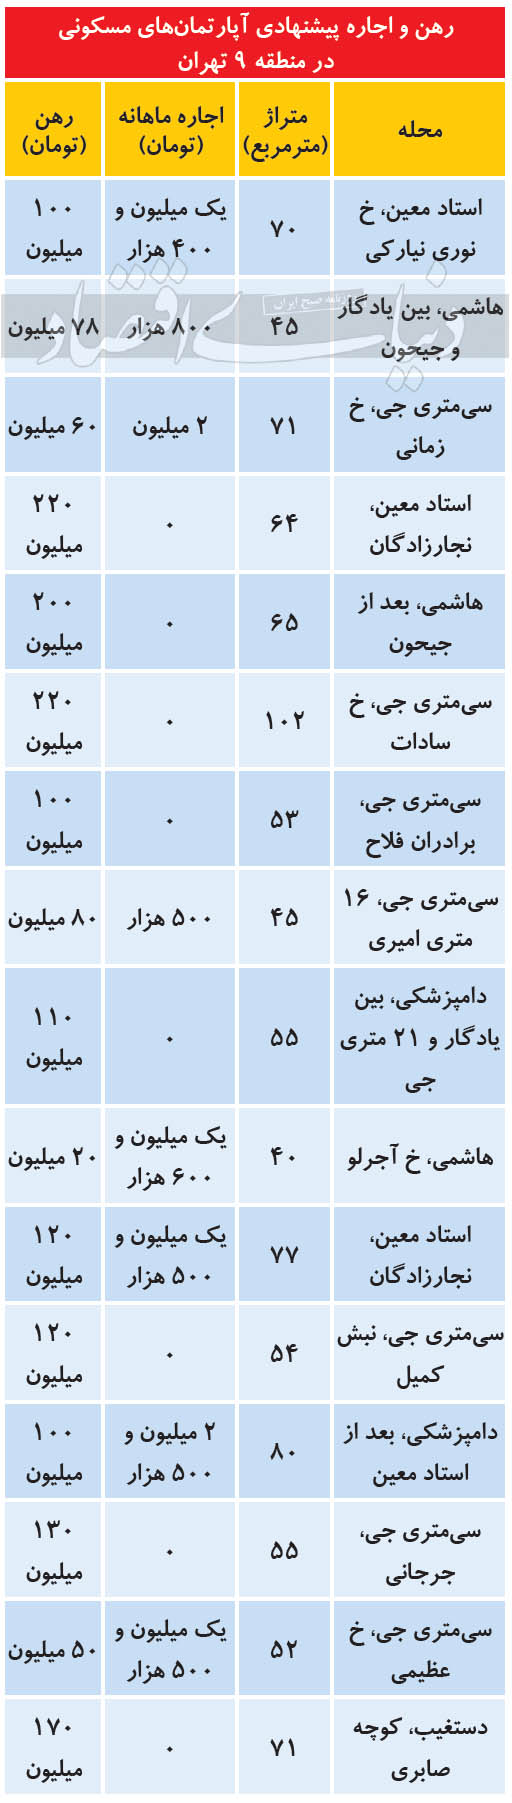 رهن و اجاره پیشنهادی آپارتمان های مسکونی در منطقه 9 تهران